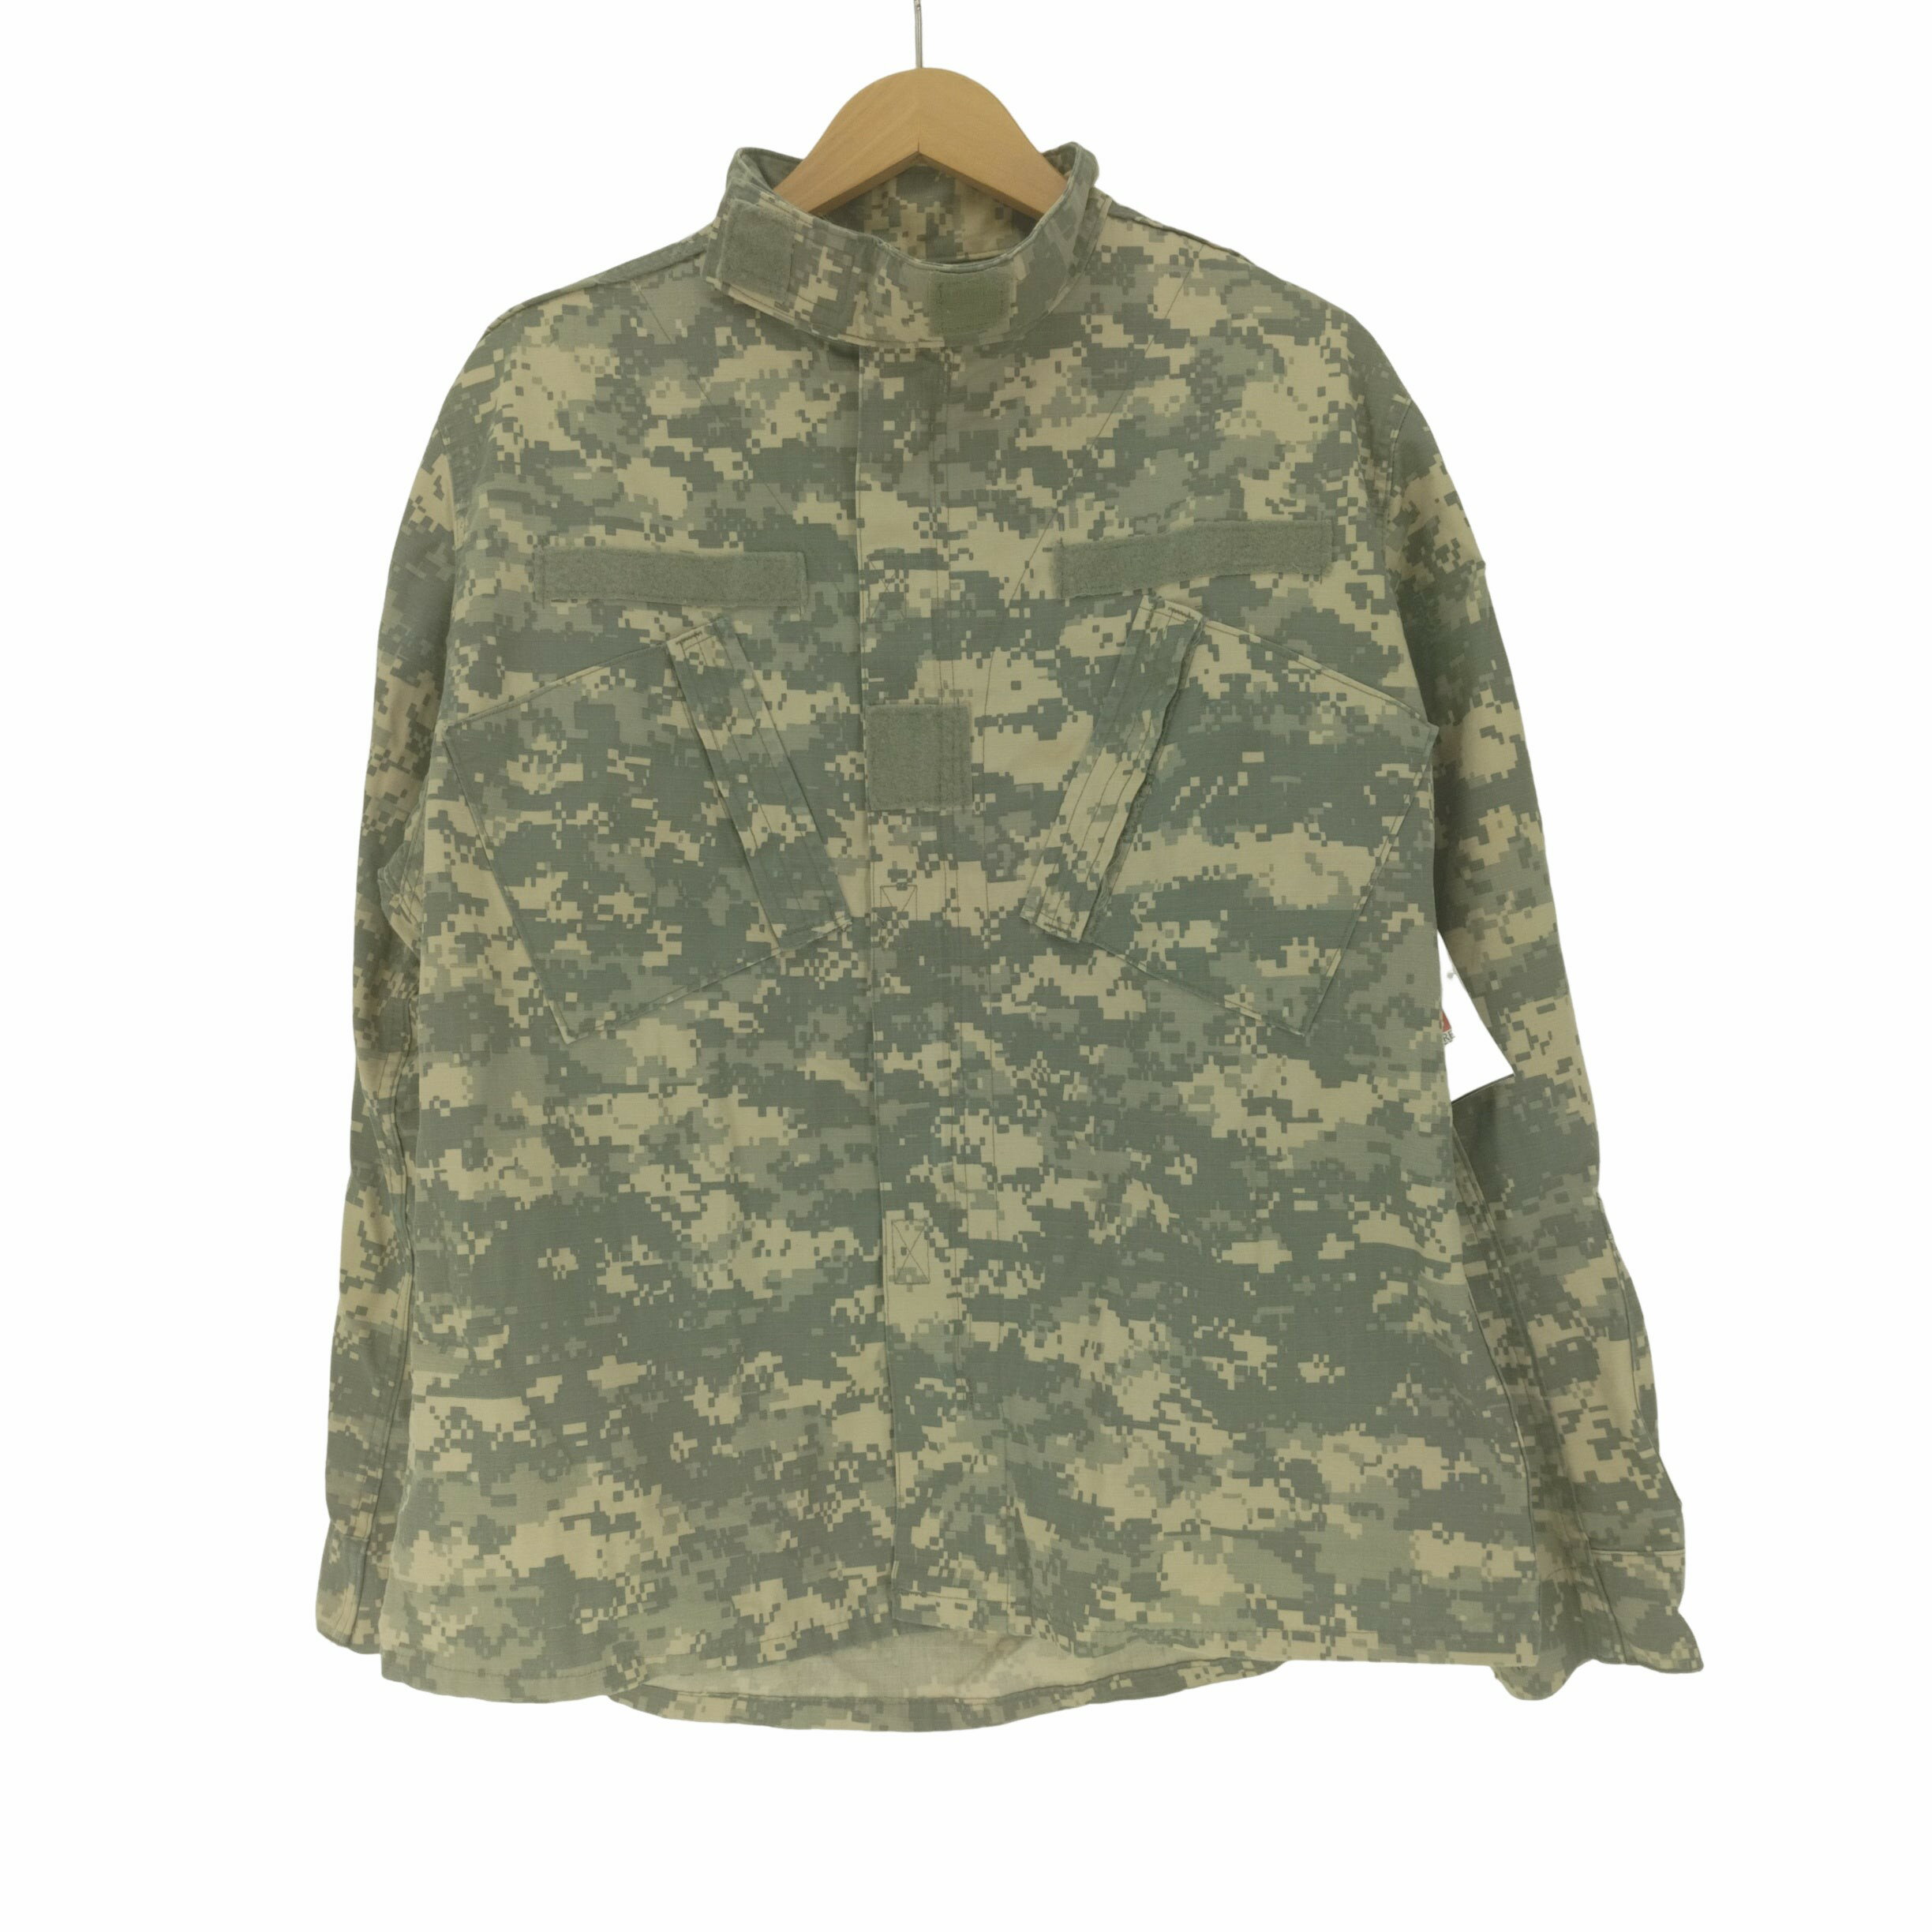 yÁz[GXA[~[ US ARMY 00S ACU Digital Camo Combat Uniform fW^J Robg jtH[ 07N Y \L